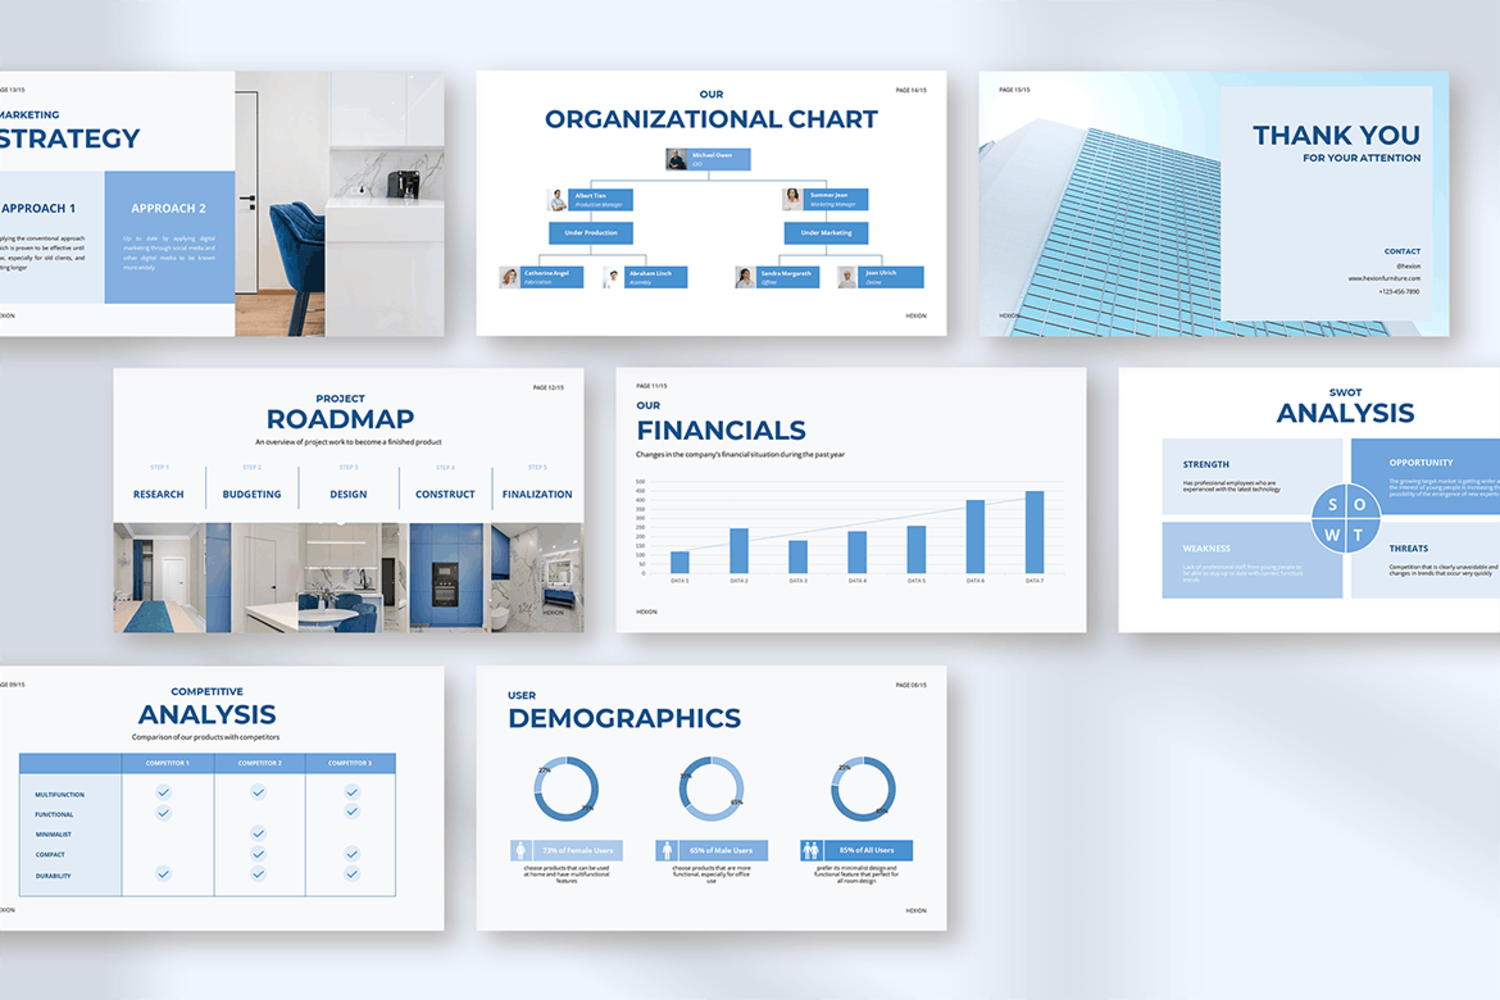 4677 商务品牌集团公司发展历程招商演讲主题PPT模版 Hexion – Blue Minimal Chart Business Presentation@GOOODME.COM